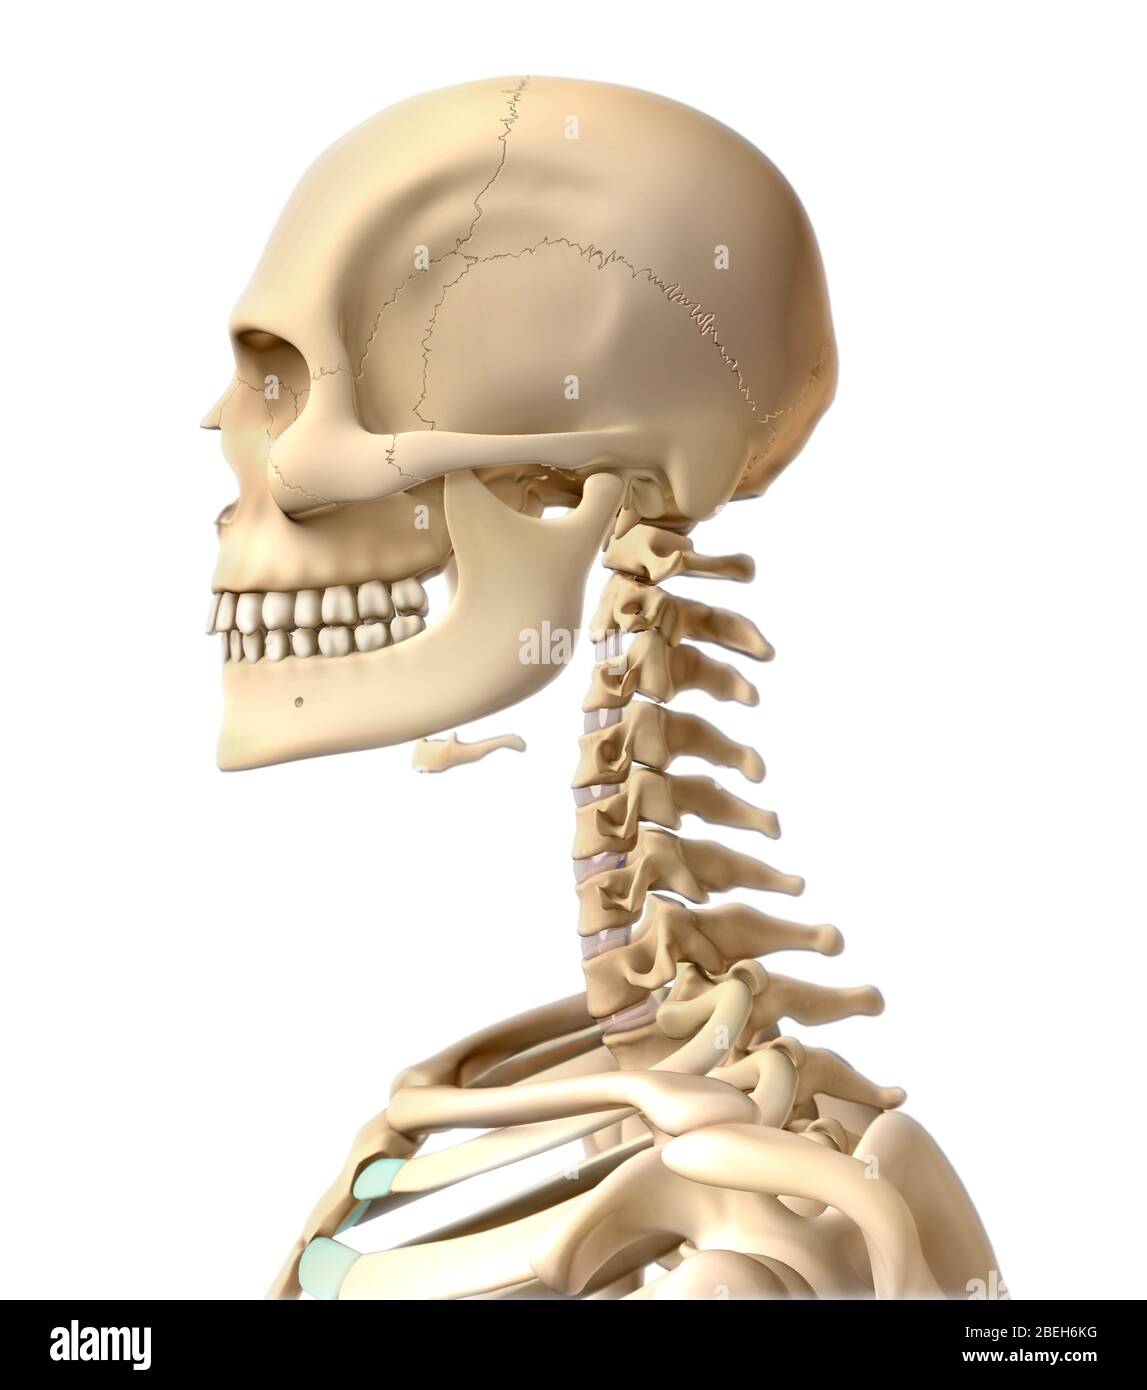 Menschliches Skelett, Kopf und Hals Stockfotografie - Alamy